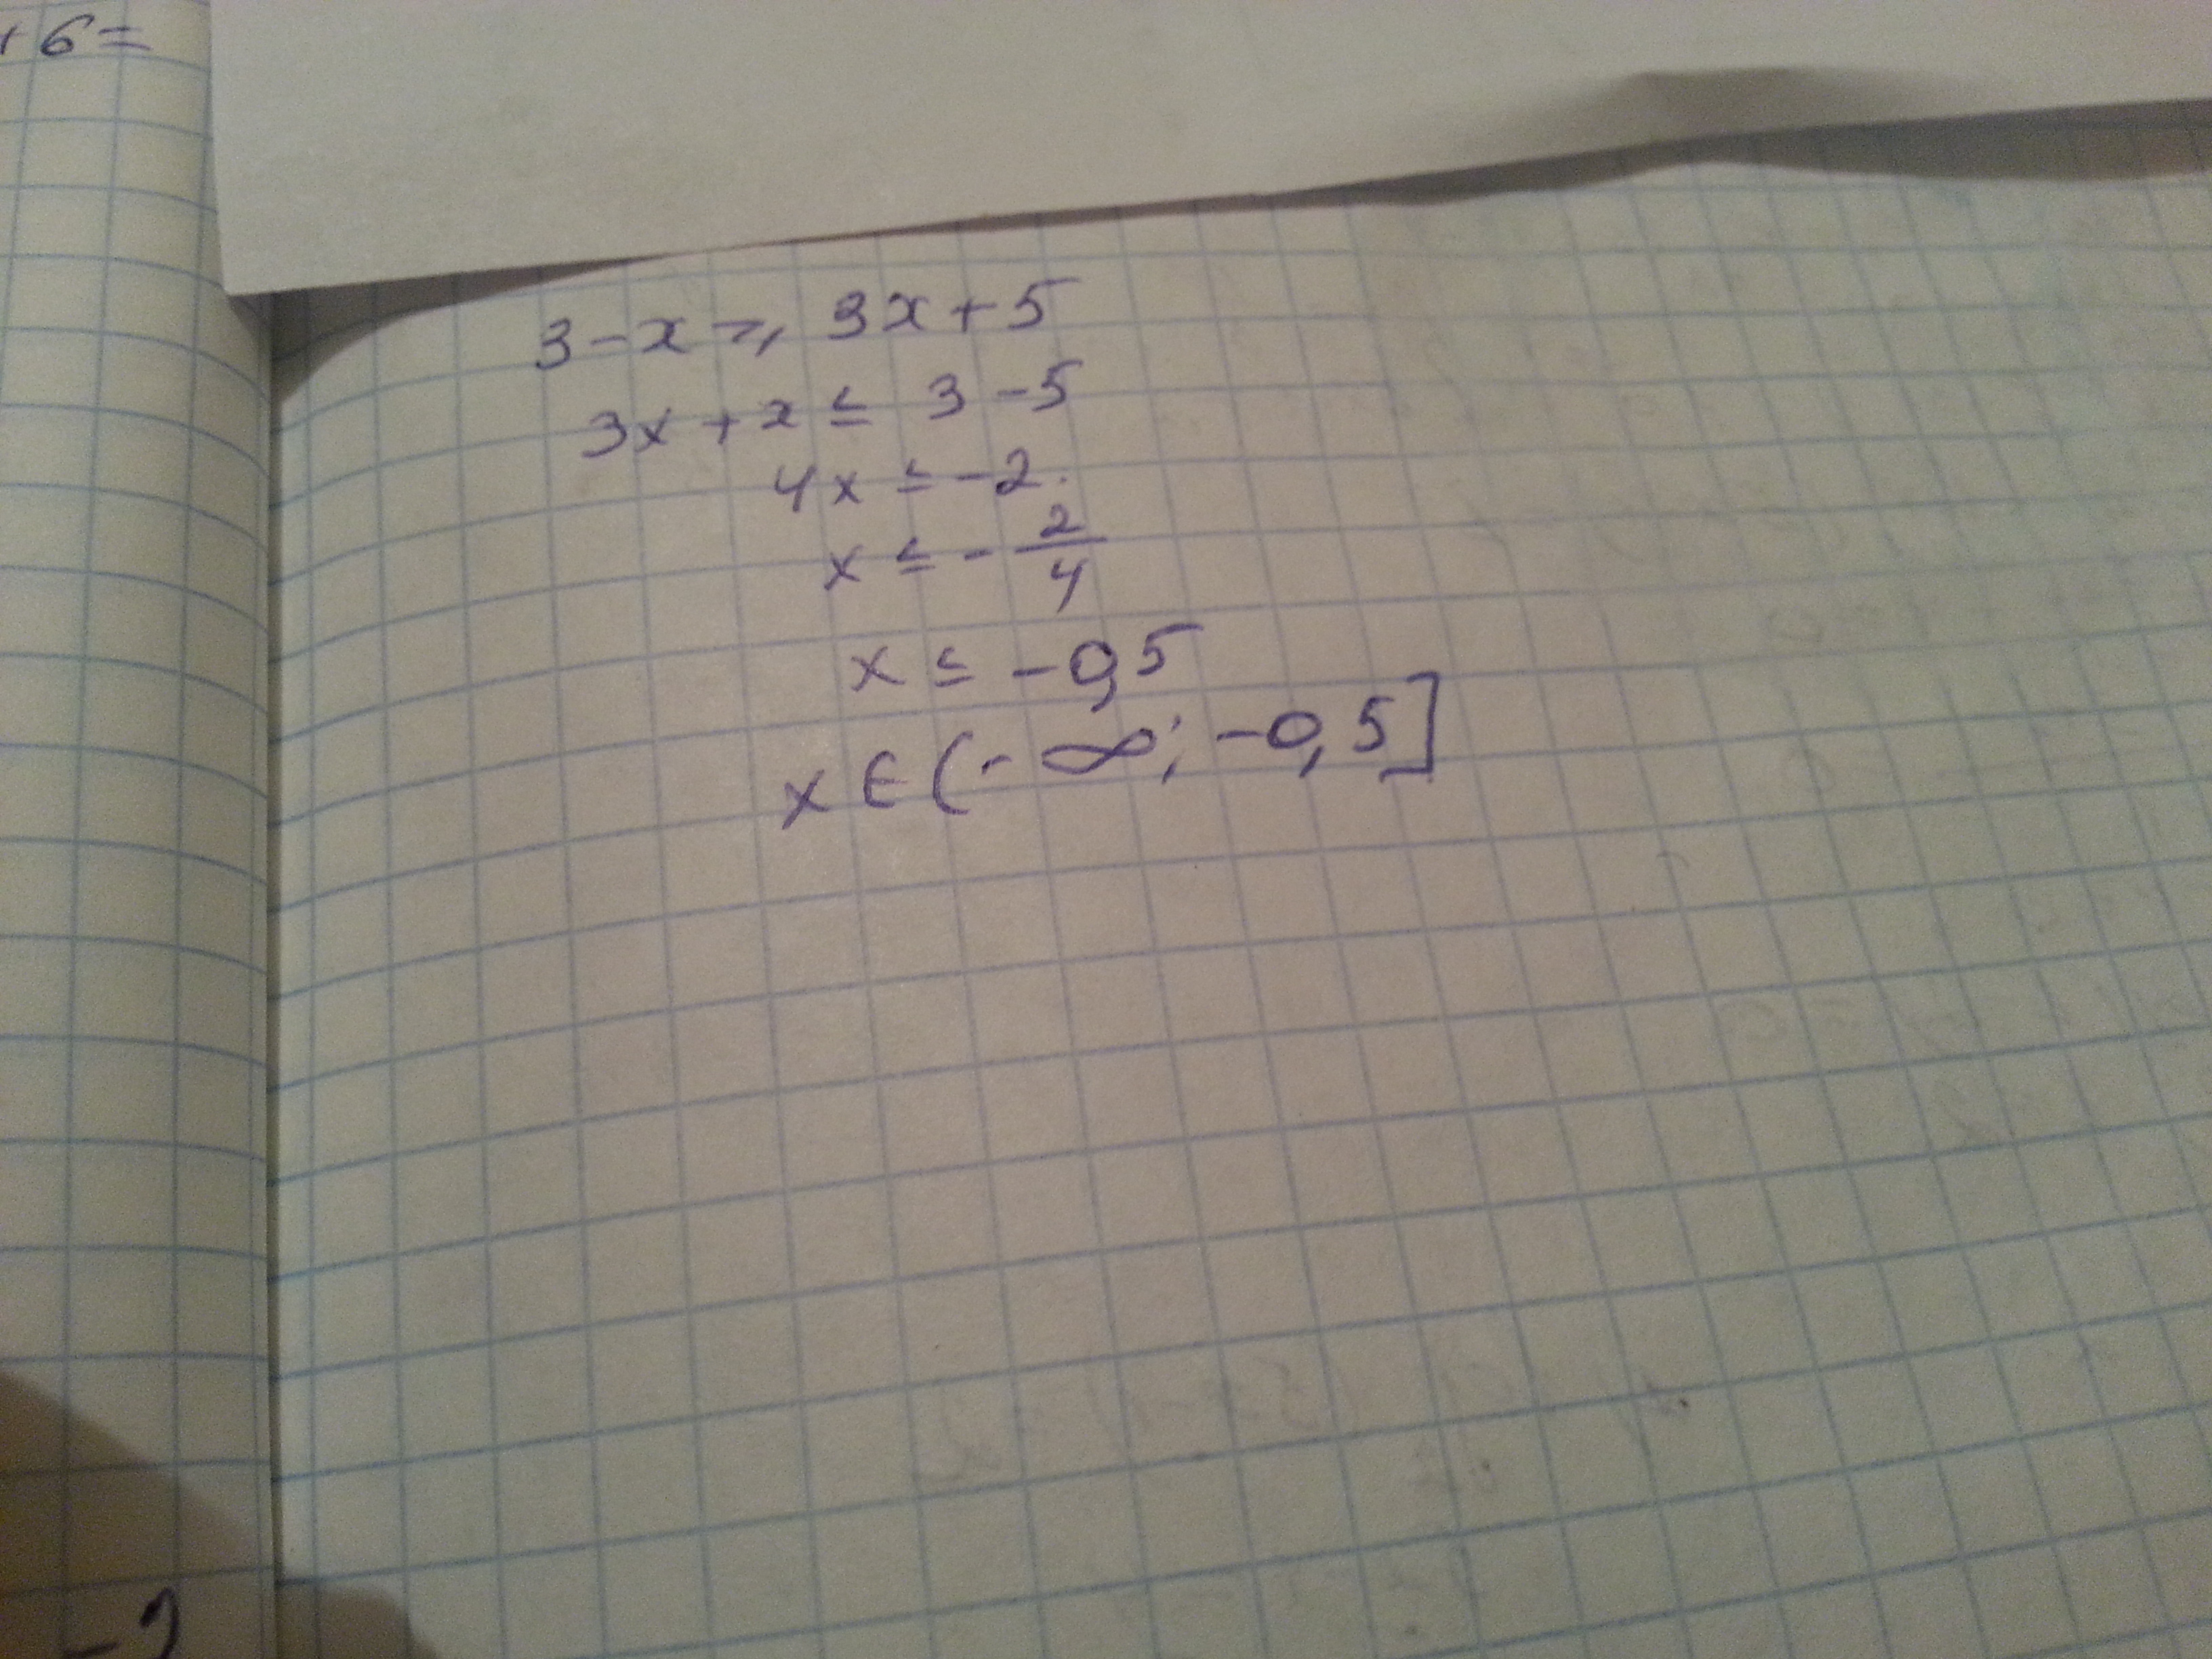 4x 3 4x 5 11. 3x-(x-3)<=5x. Укажите решение неравенства -3-5x< x+3. 3-X 3x+5 решение неравенства. 3-X>3x+5 укажите решение.